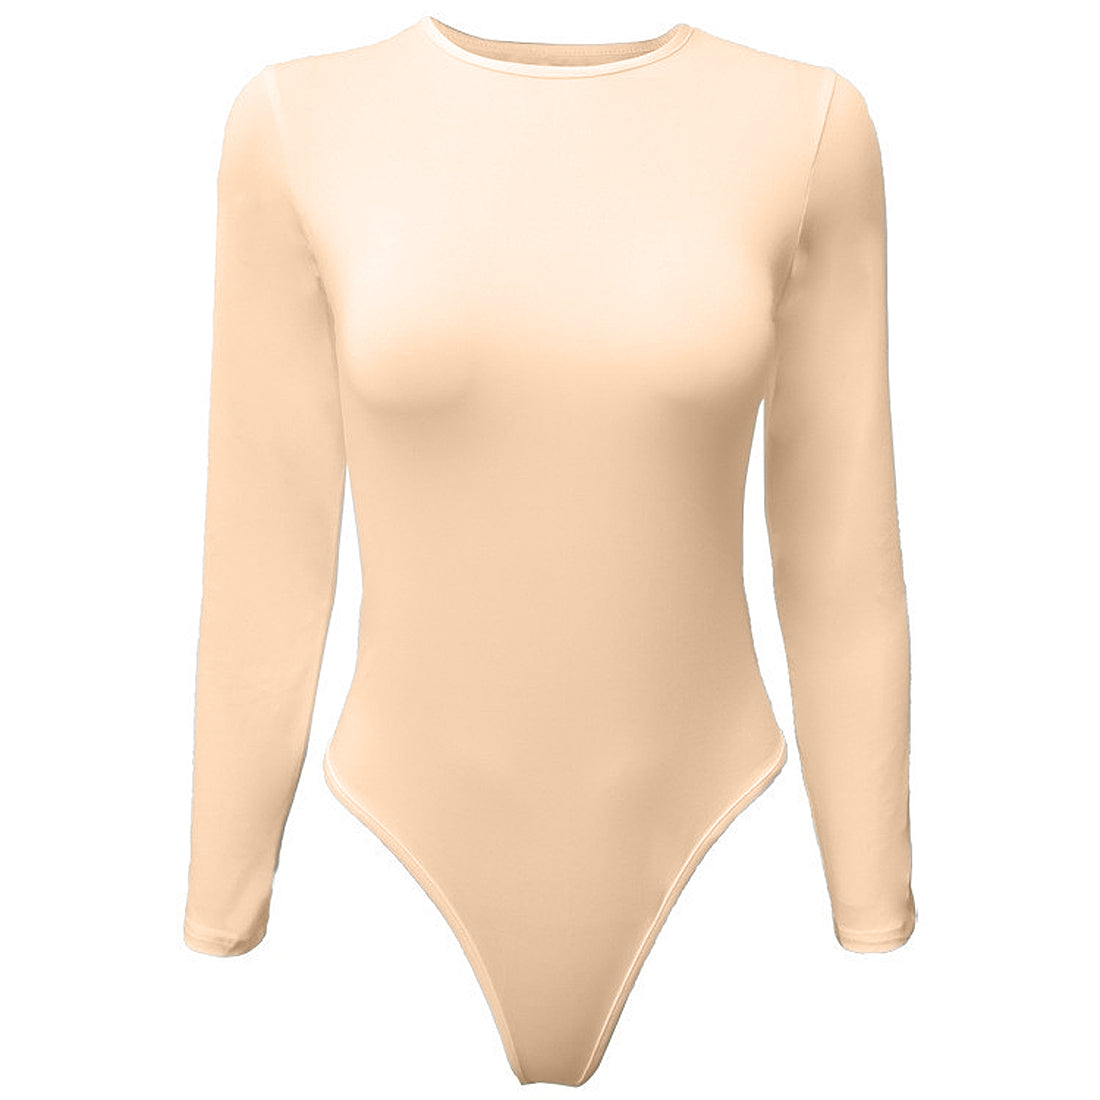 Hanerdun Women Tummy Control Shapewear Female Compression Bodysuit